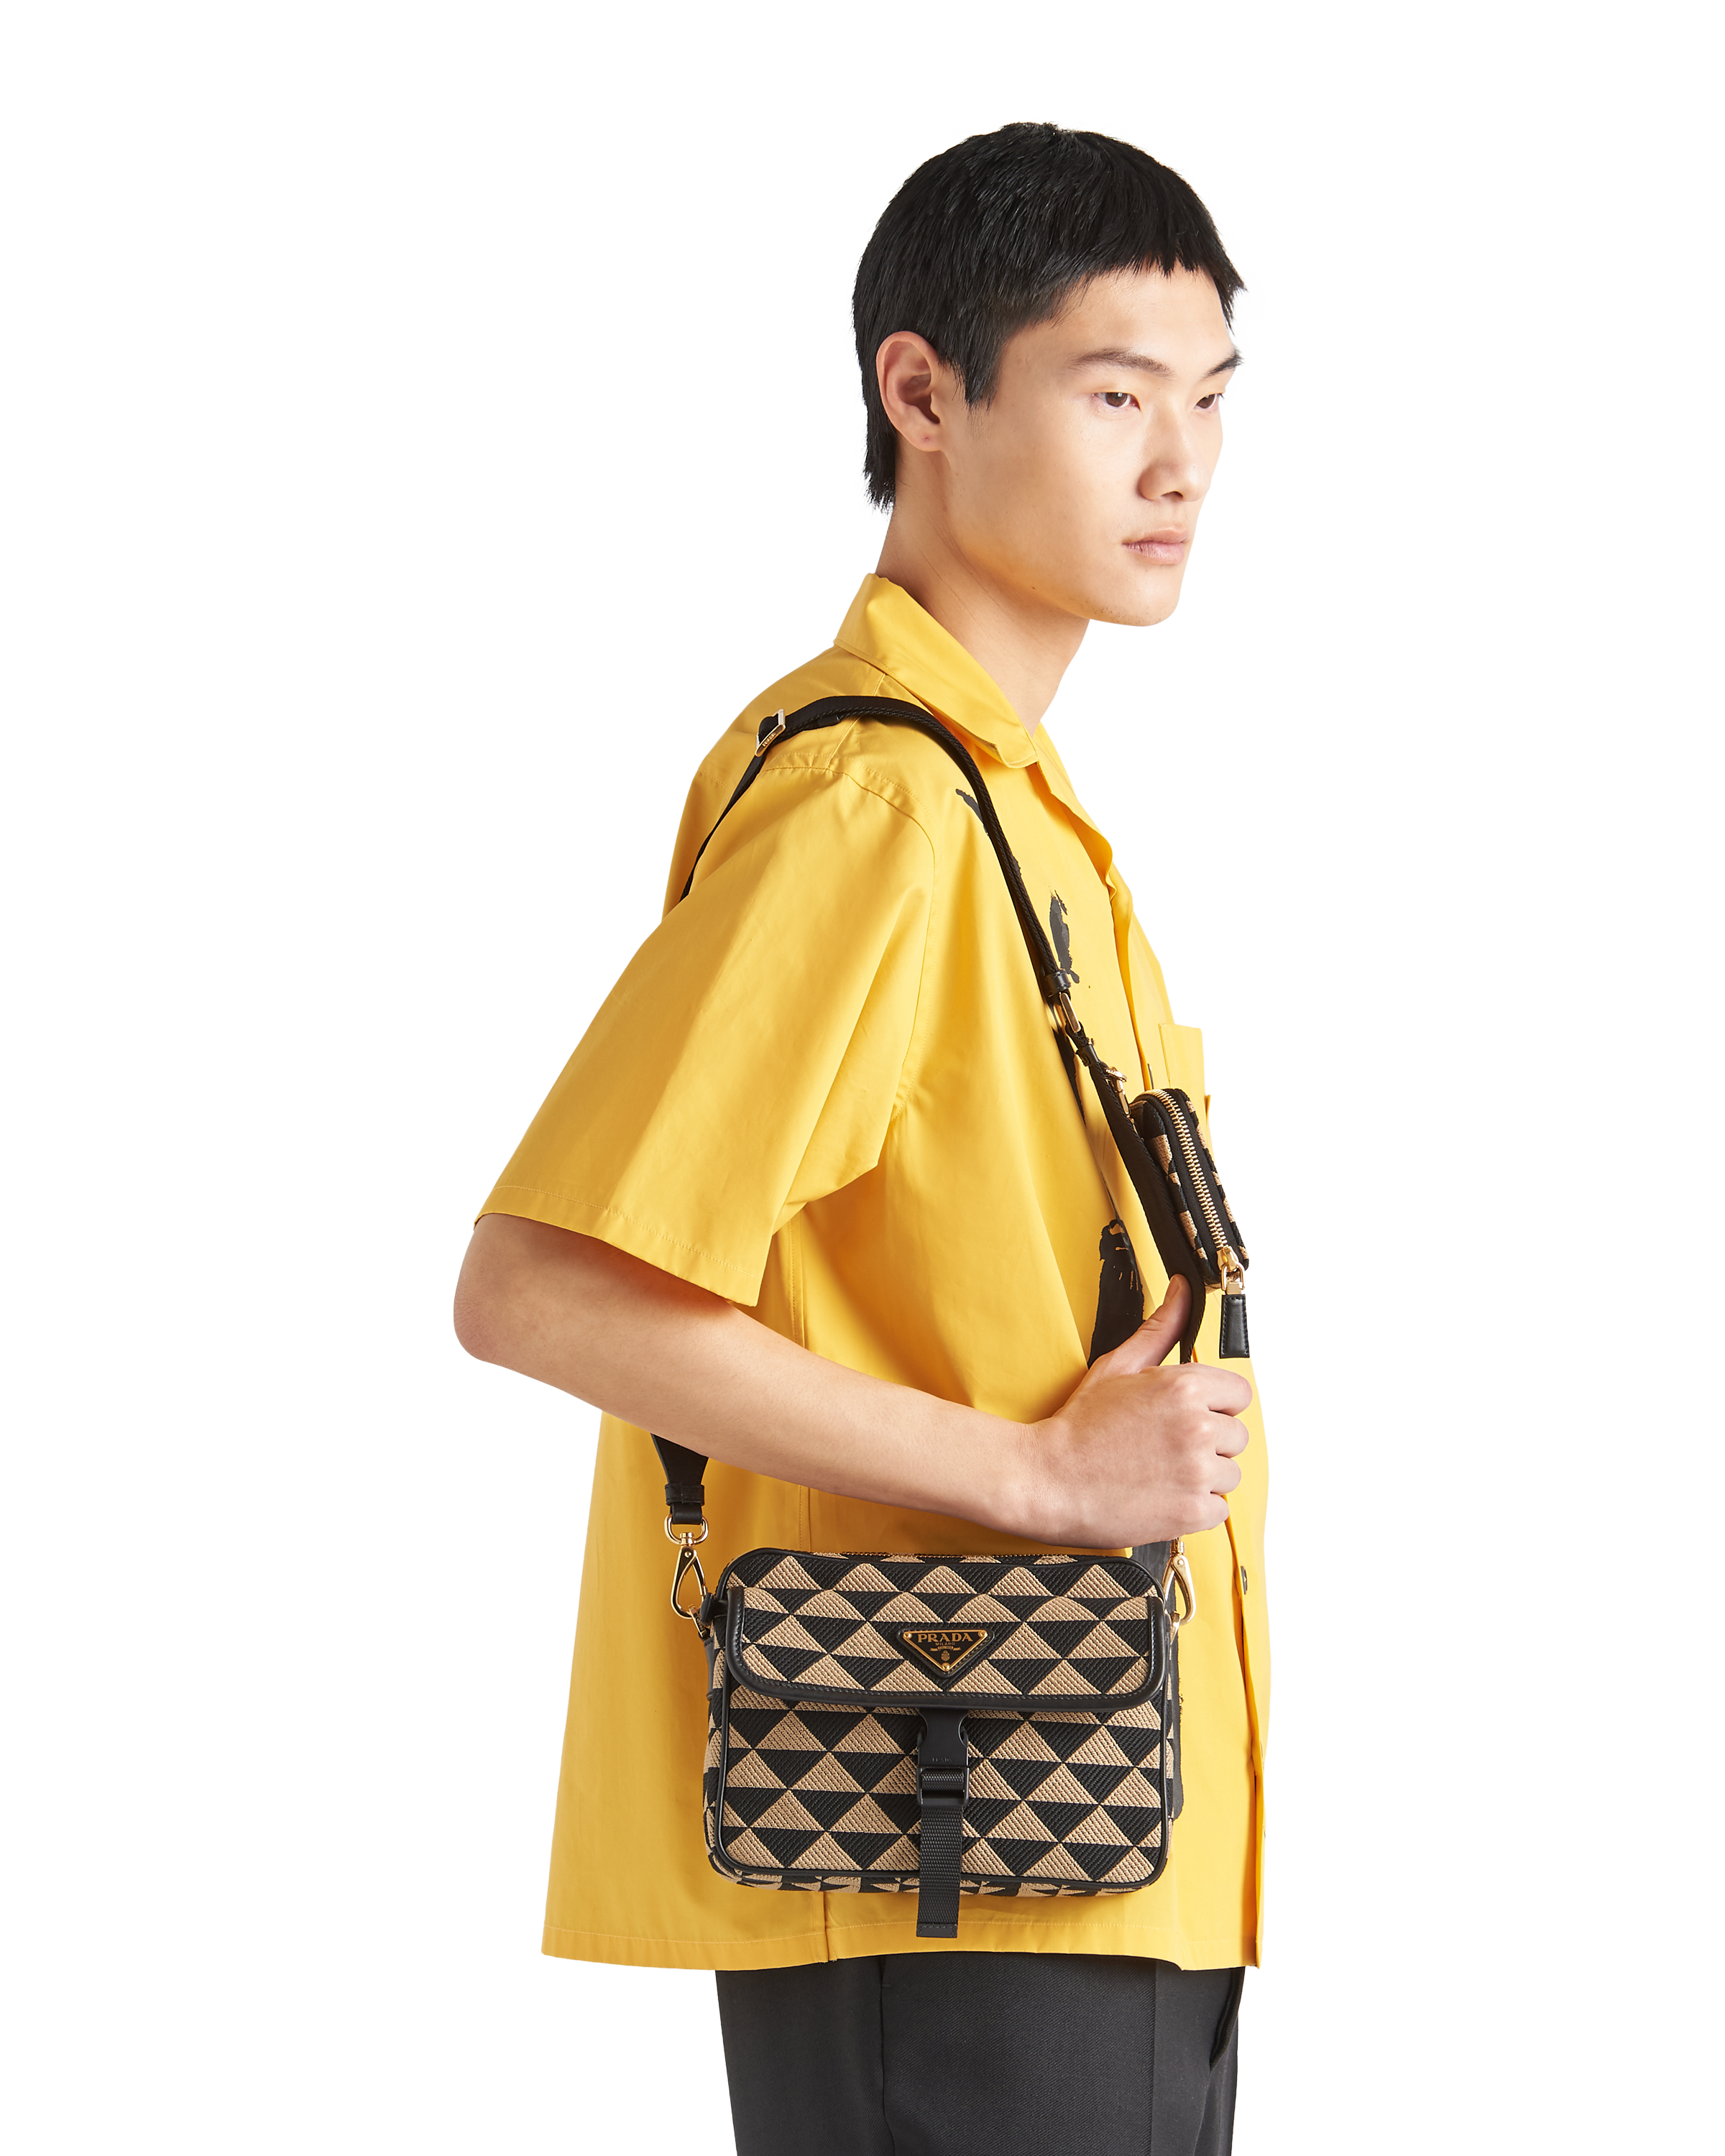 Prada Embroidered Bag Sale Online | website.jkuat.ac.ke